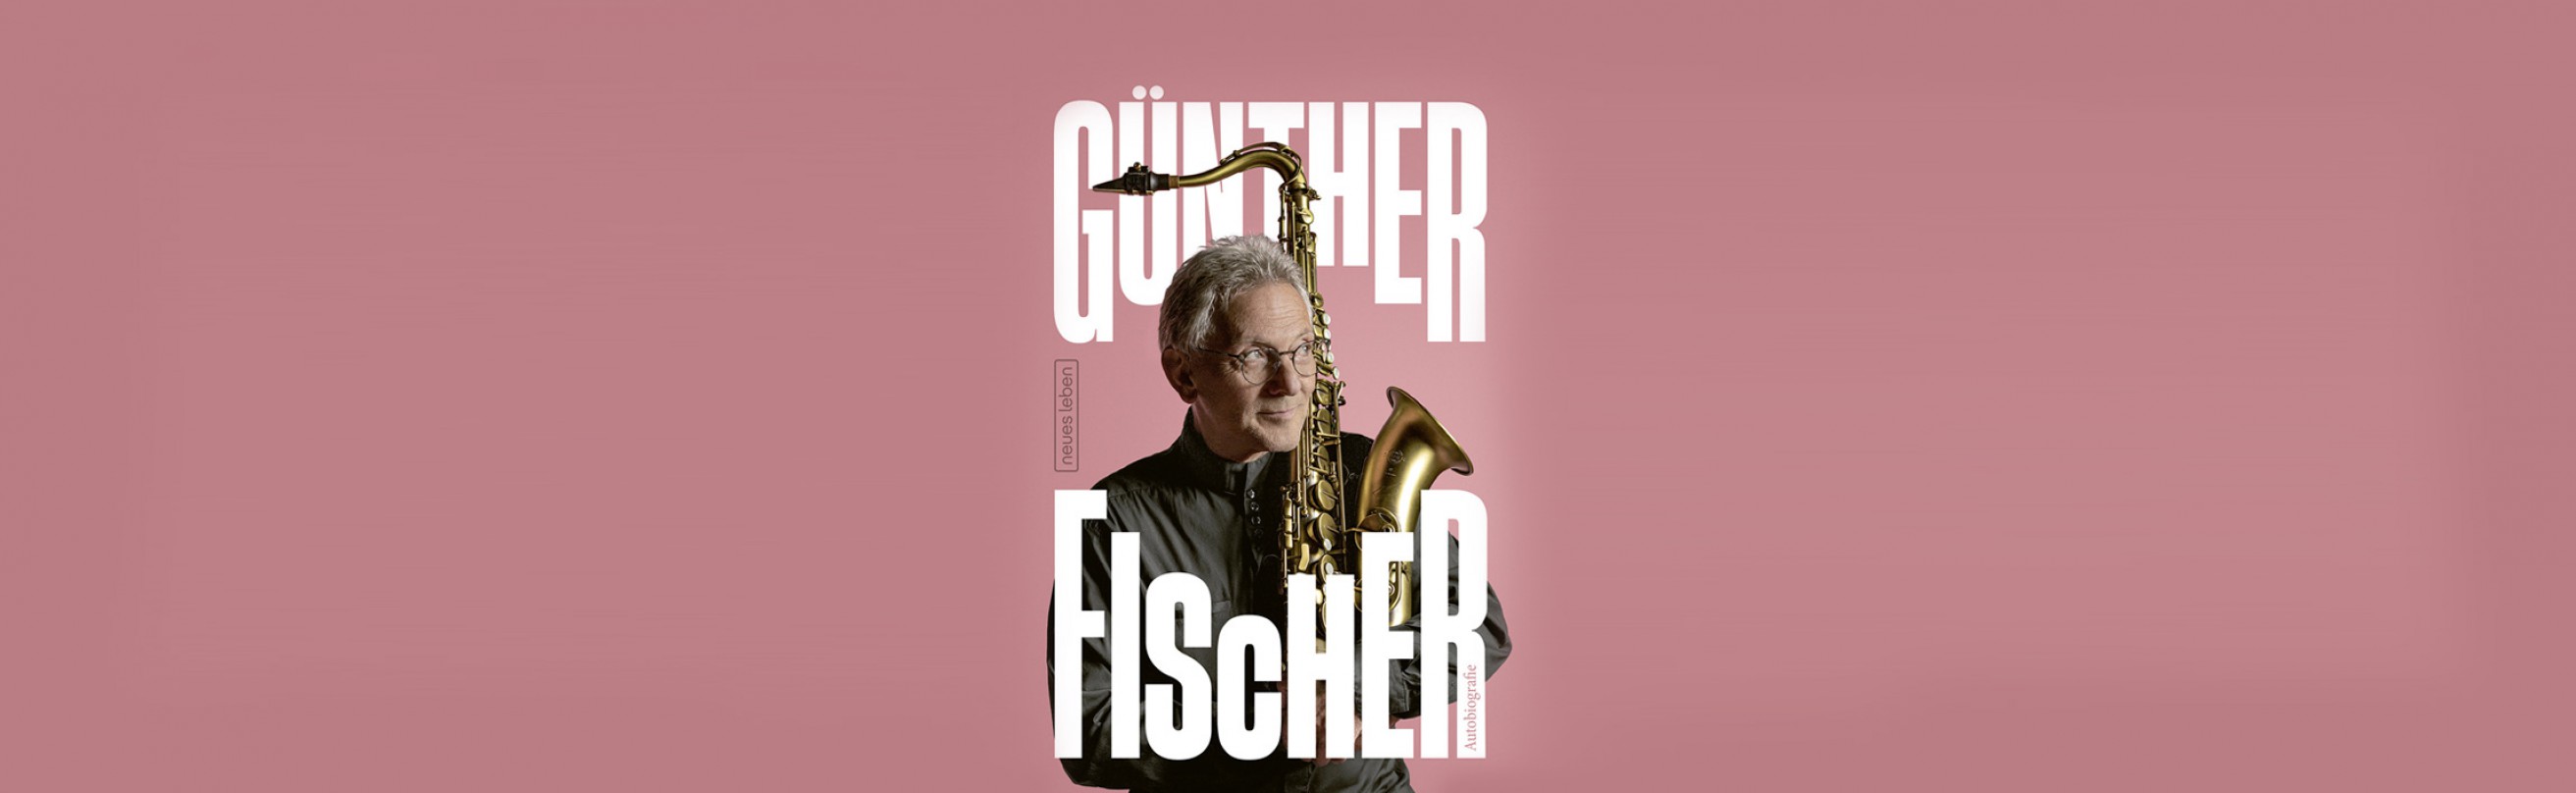 Zum 80. Geburtstag von Günther Fischer - Die Autobiografie